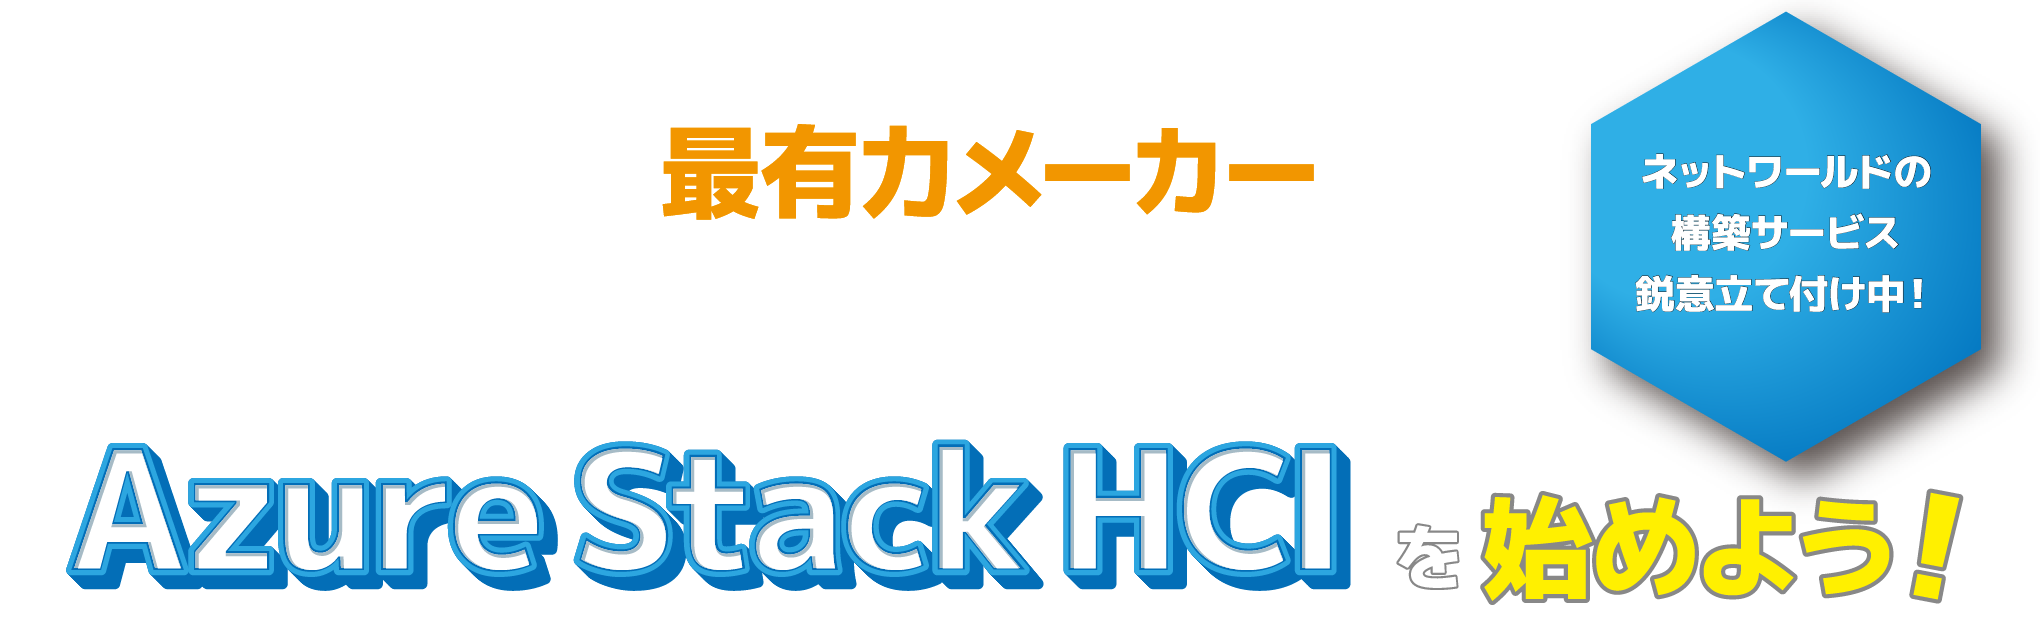 Azure Stack HCI 最有力メーカー※の Dell Technologies で Azure Stack HCI を始めよう! ネットワールドの構築サービス鋭意立て付け中!